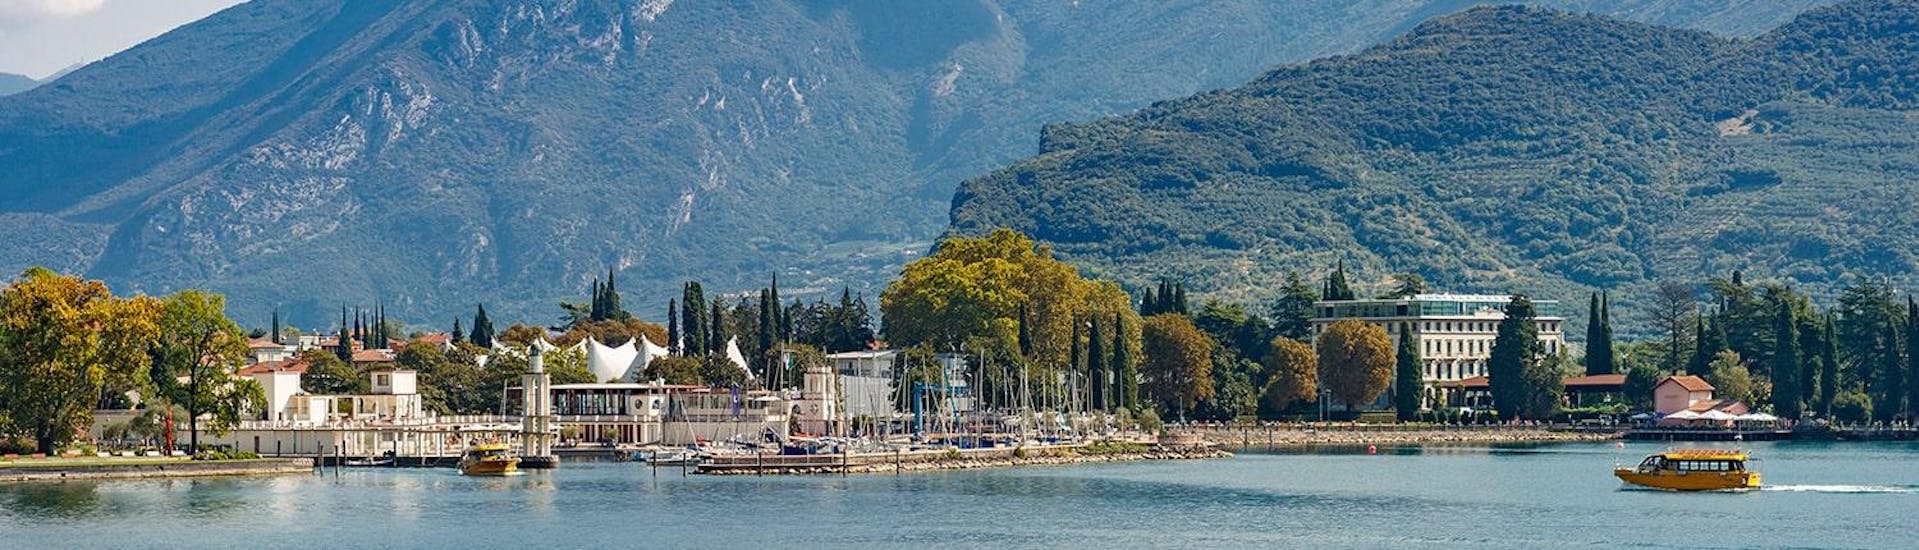 Una gita in barca sul lago di Garda va a Limone e Malcenise con Speedy Boat Riva del Garda.